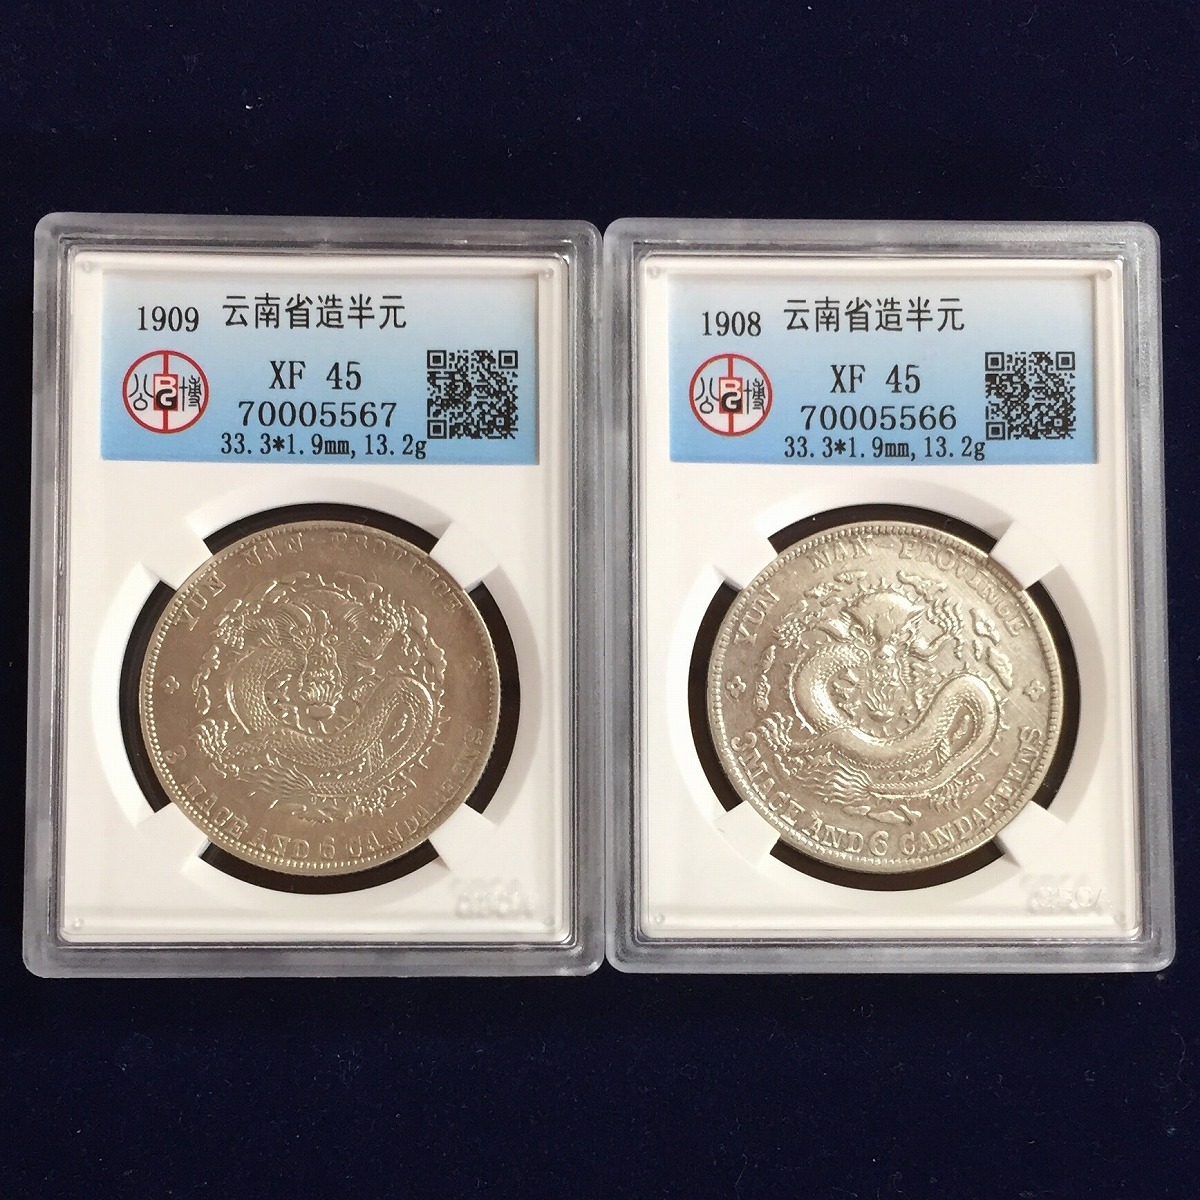 古い中国の銀貨 - 3 枚セット美術品・アンティーク・コレクション ...